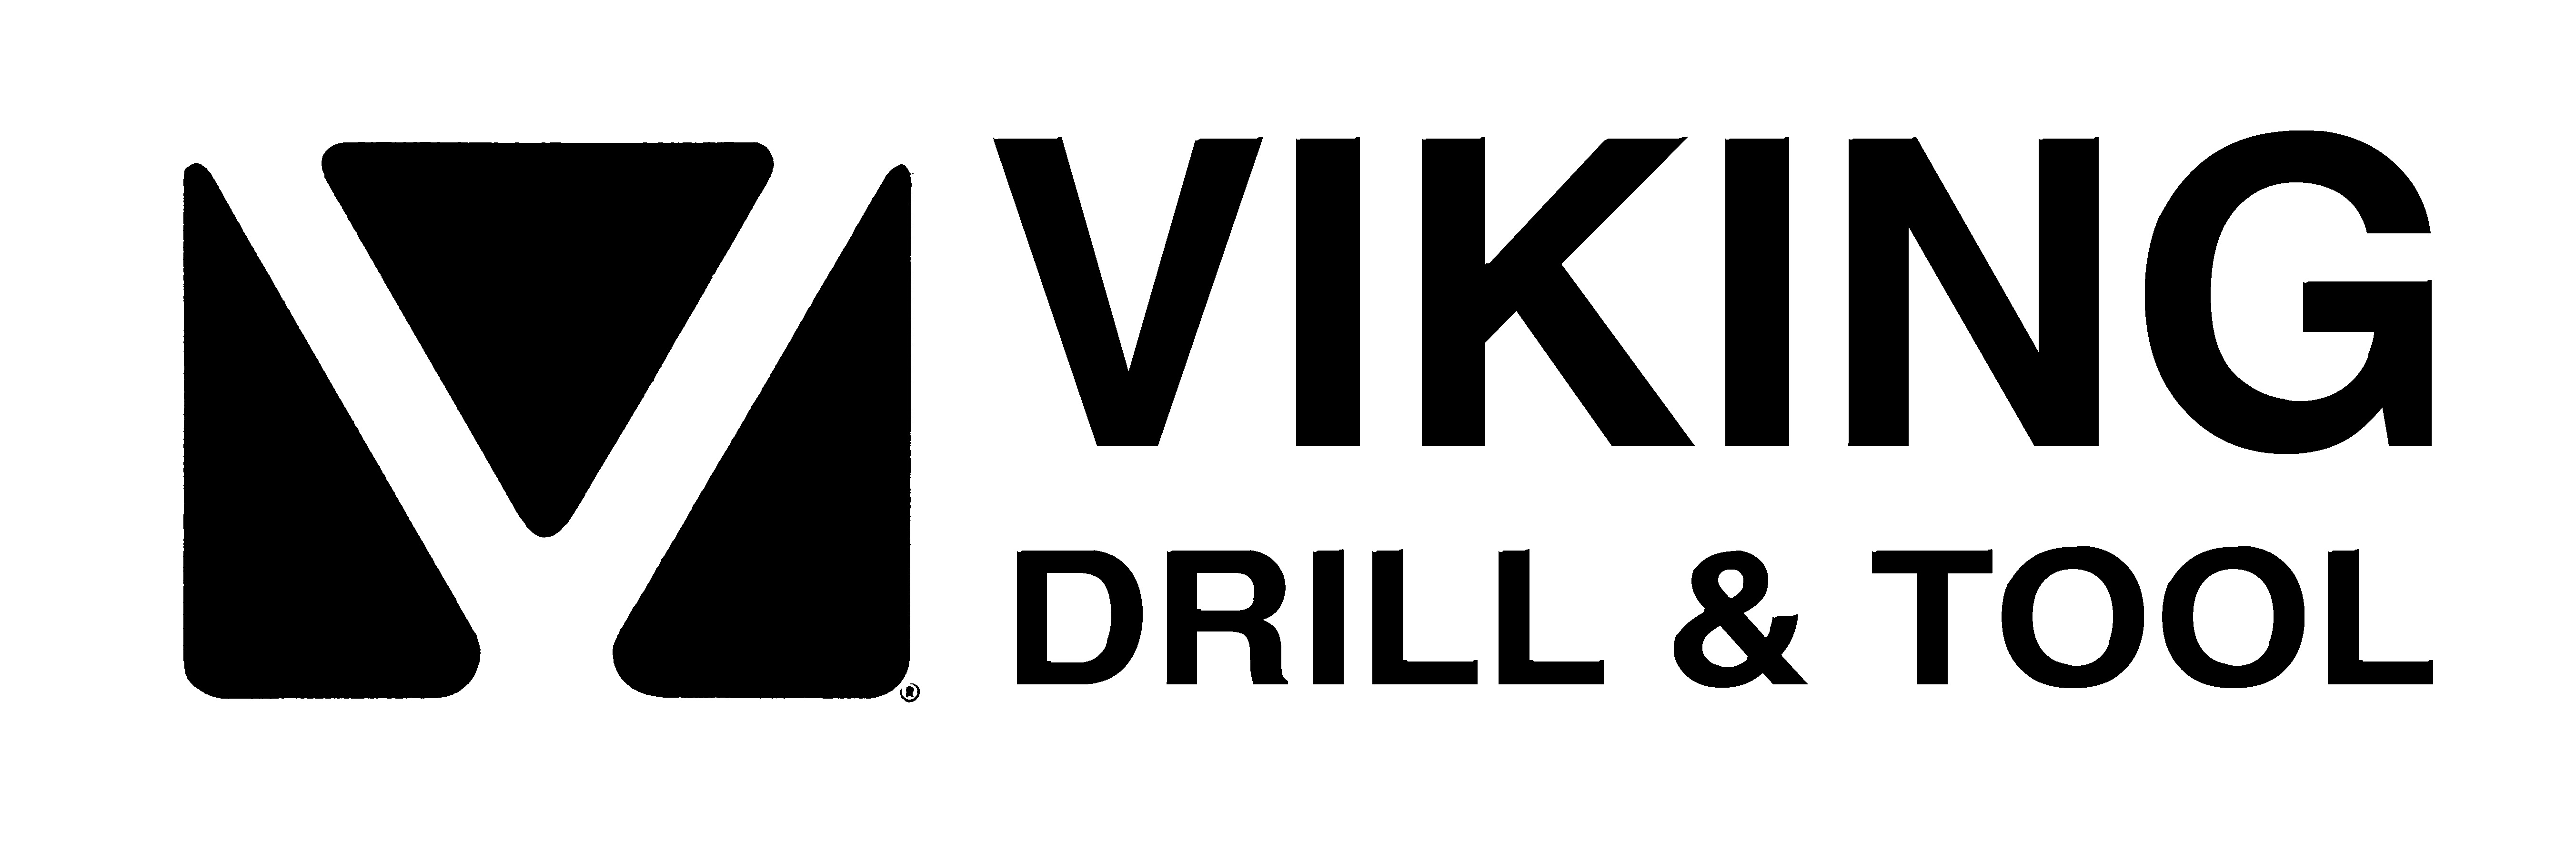 Viking Drill & Tool